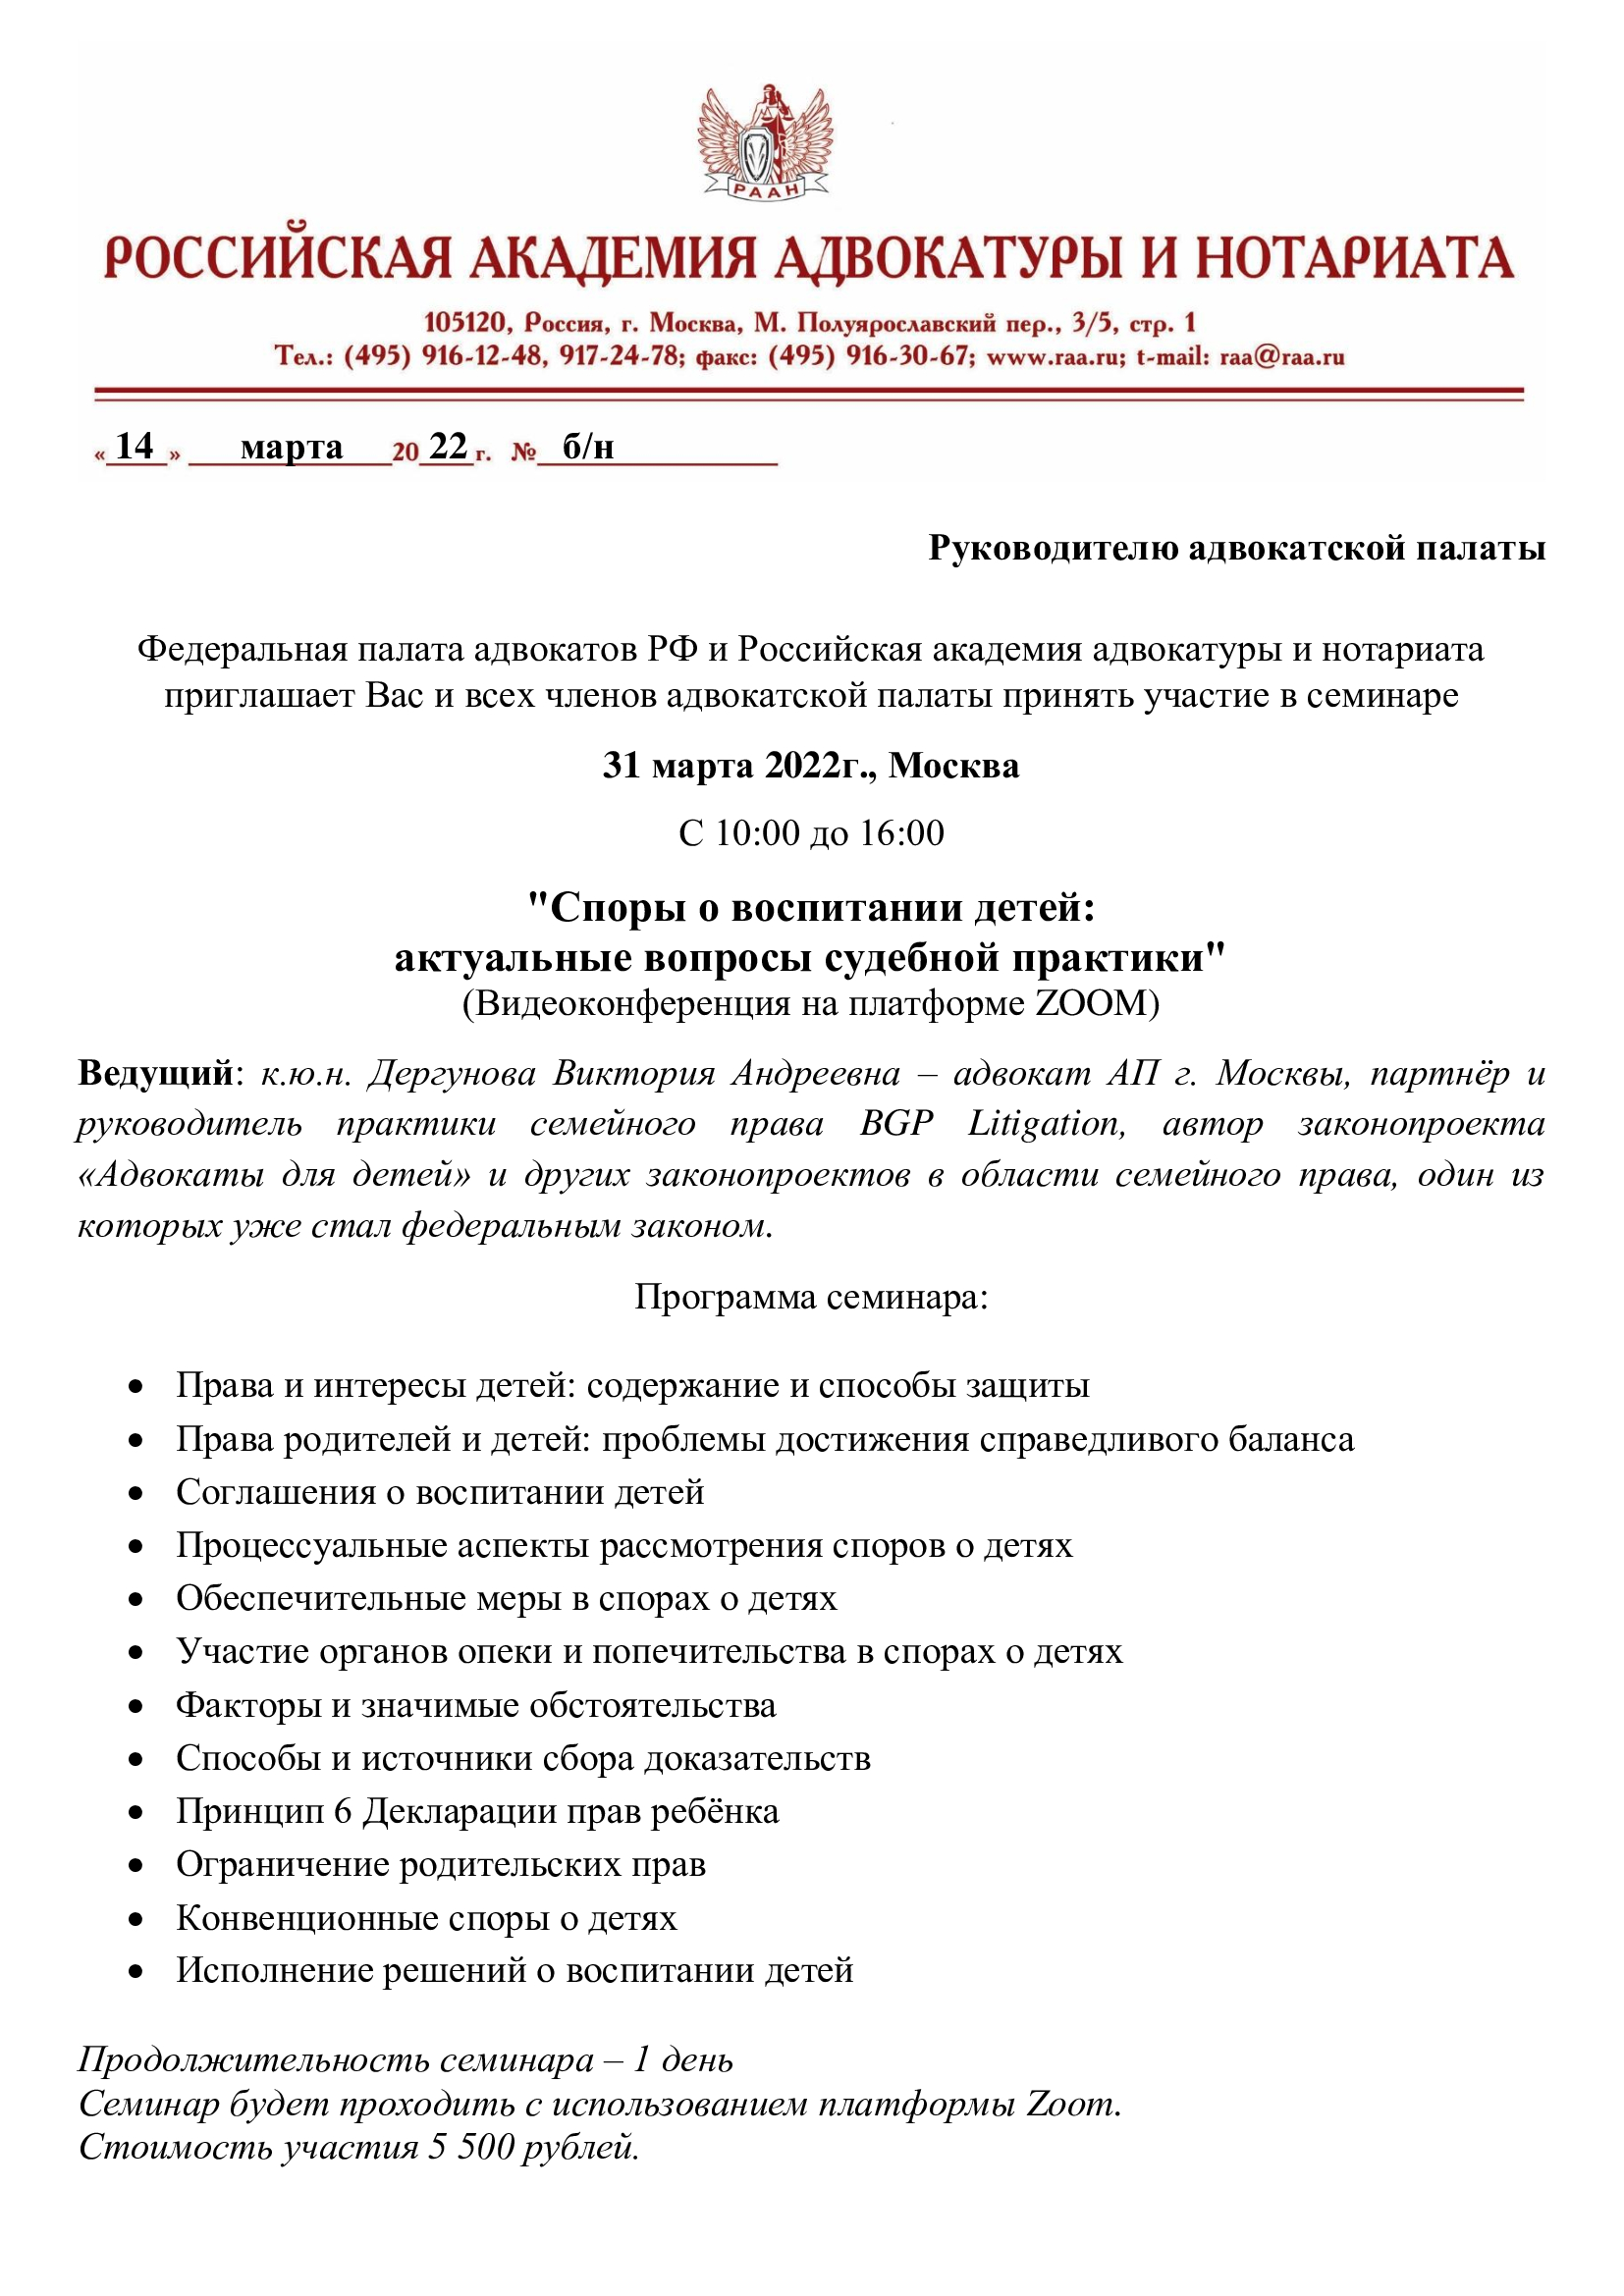  Курсы повышения квалификации адвокатов 17.03.2022 г. и 31.03.2022 г.